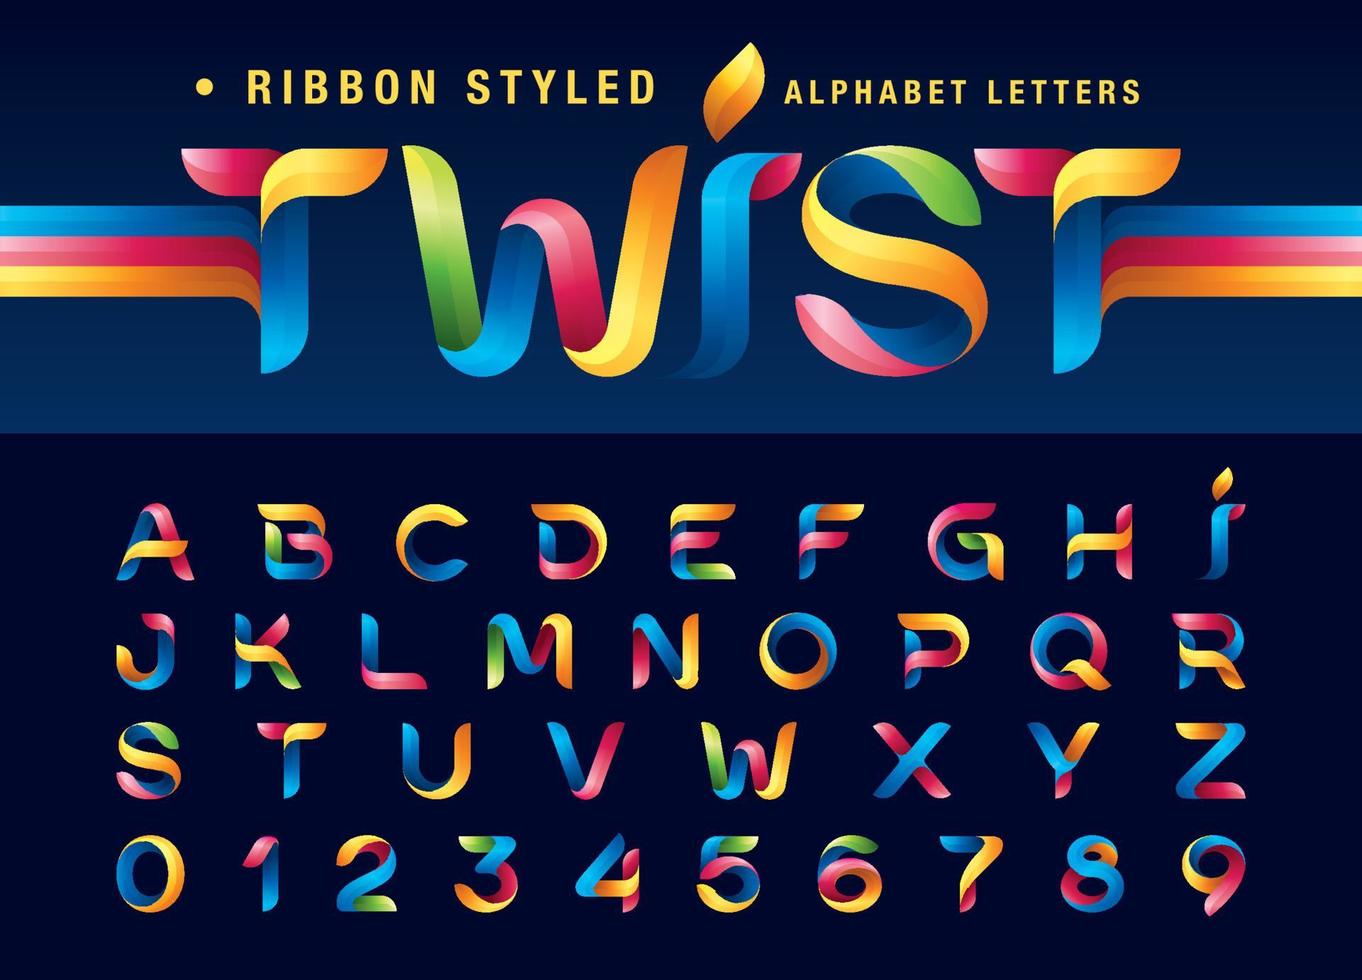 färgglada twist band alfabet bokstäver och siffror, modern origami stiliserade rundade bokstäver vektor